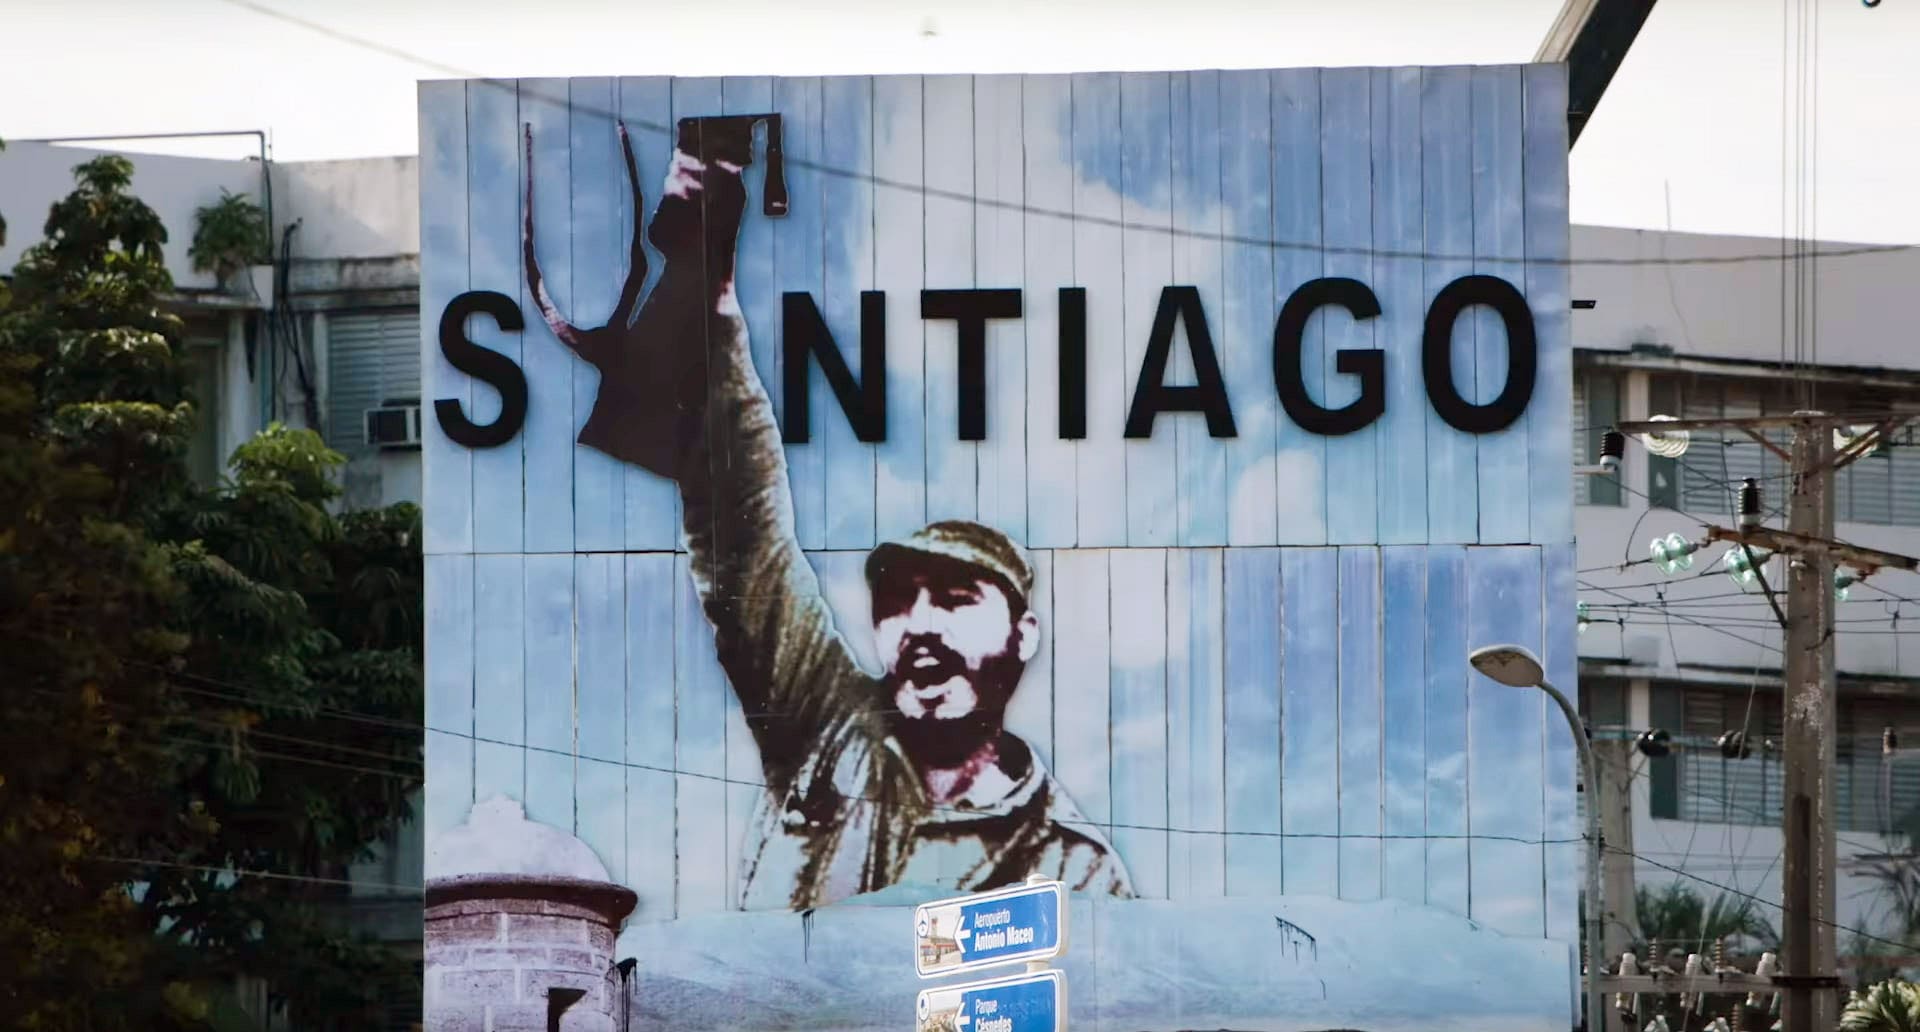 Uno dei tanti murales realizzati a Santiago di Cuba dopo la vittoria di Castro, a conferma dell'enorme successo iniziale riscosso dal leader rivoluzionario